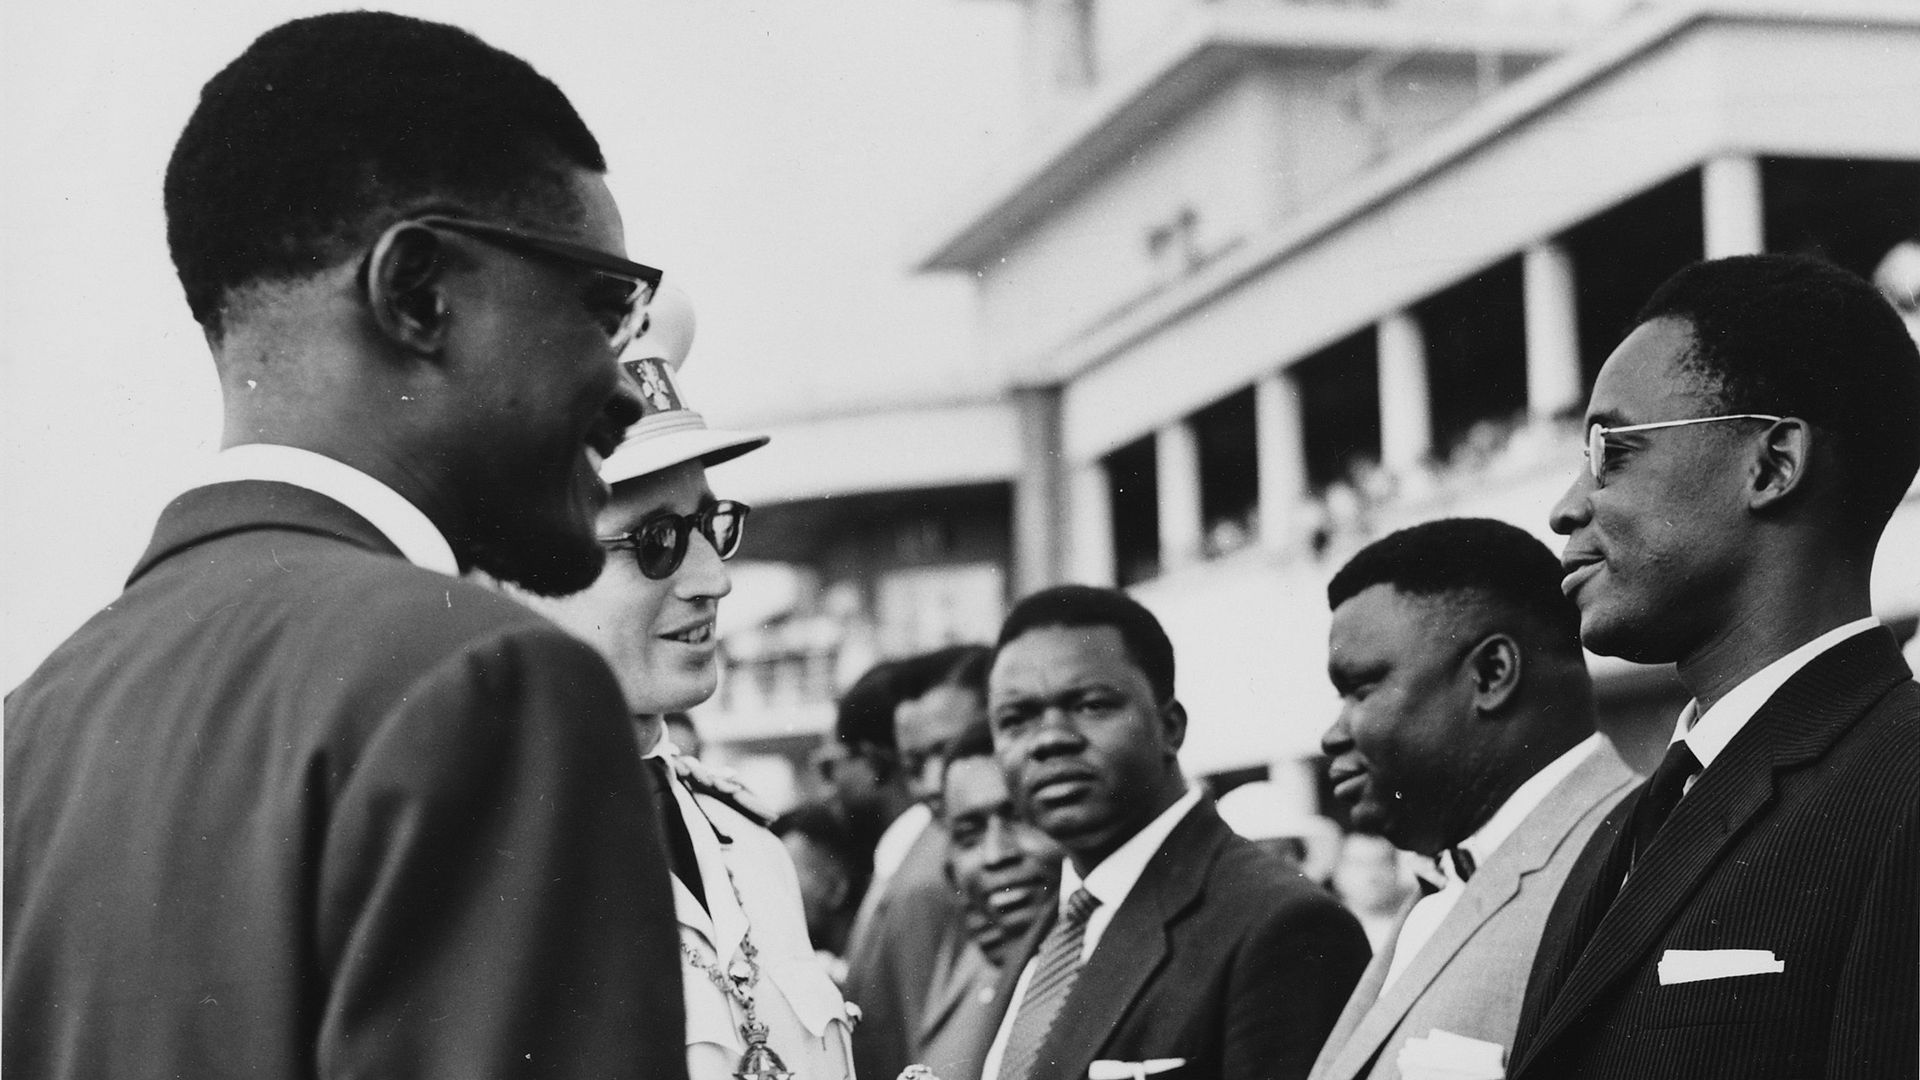 Le 29 juin, le Premier ministre Lumumba présente les membres de son gouvernement au roi Baudouin. Joseph-Désiré Mobutu est à l’avant-plan à droite